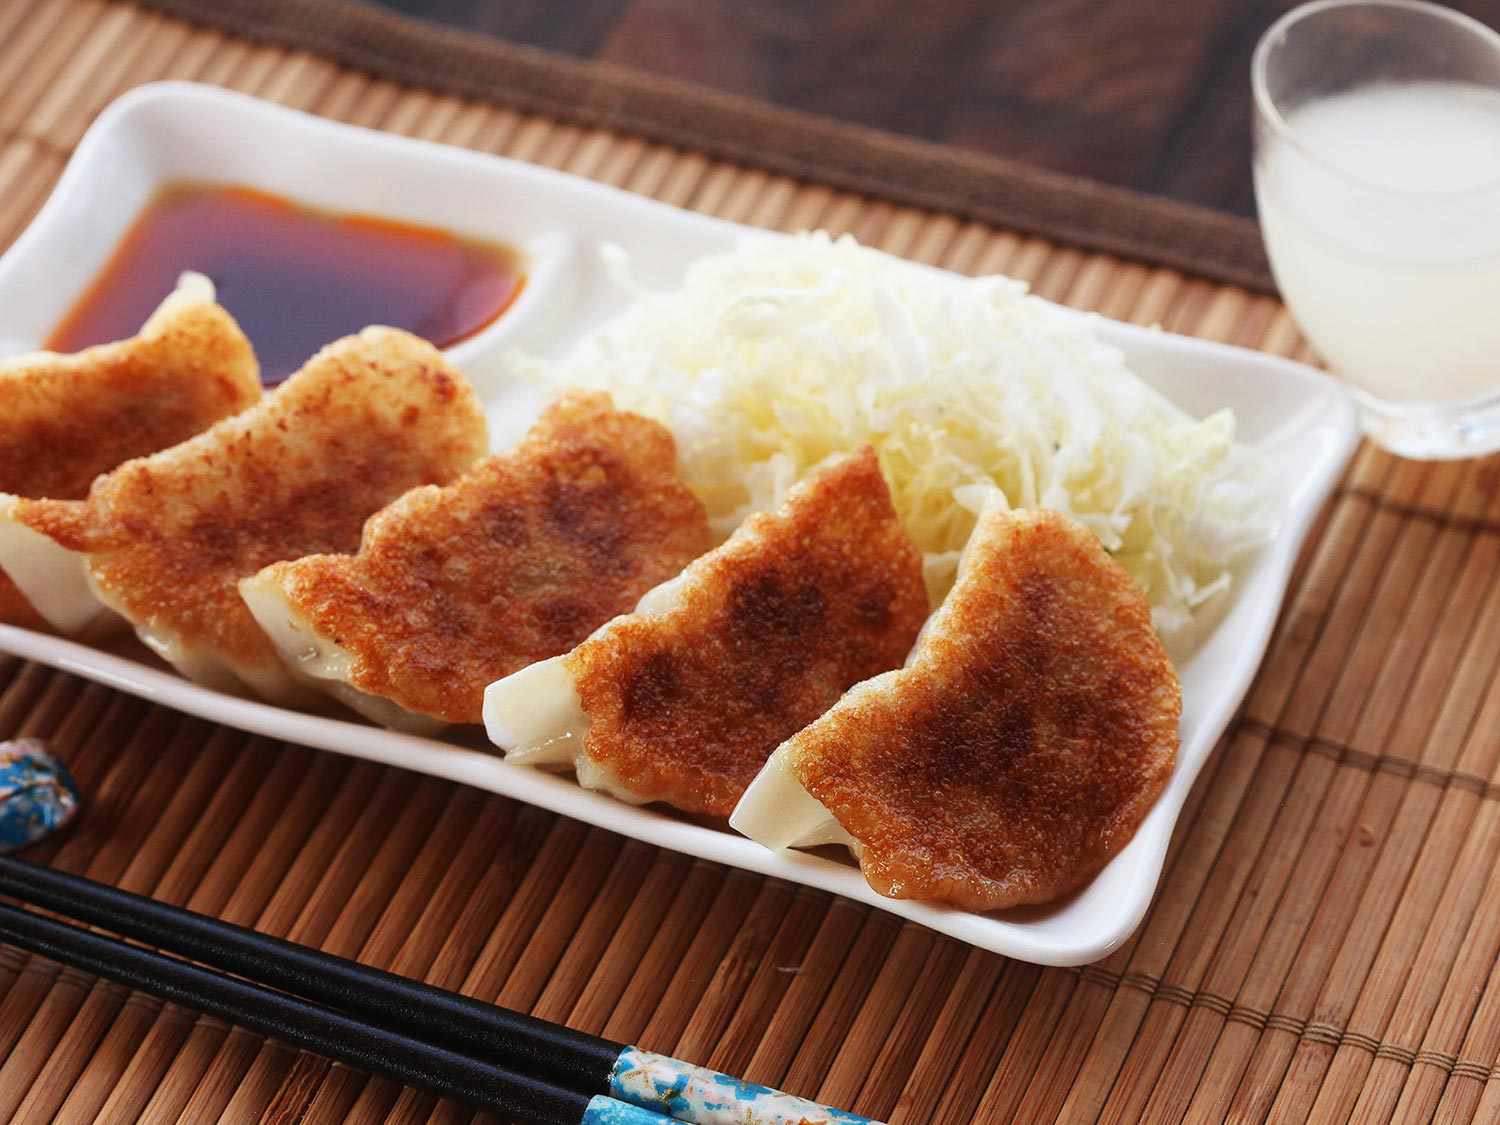 20150309 -菜单-饺子- - -日本-饺子如何食谱- 37. jpg